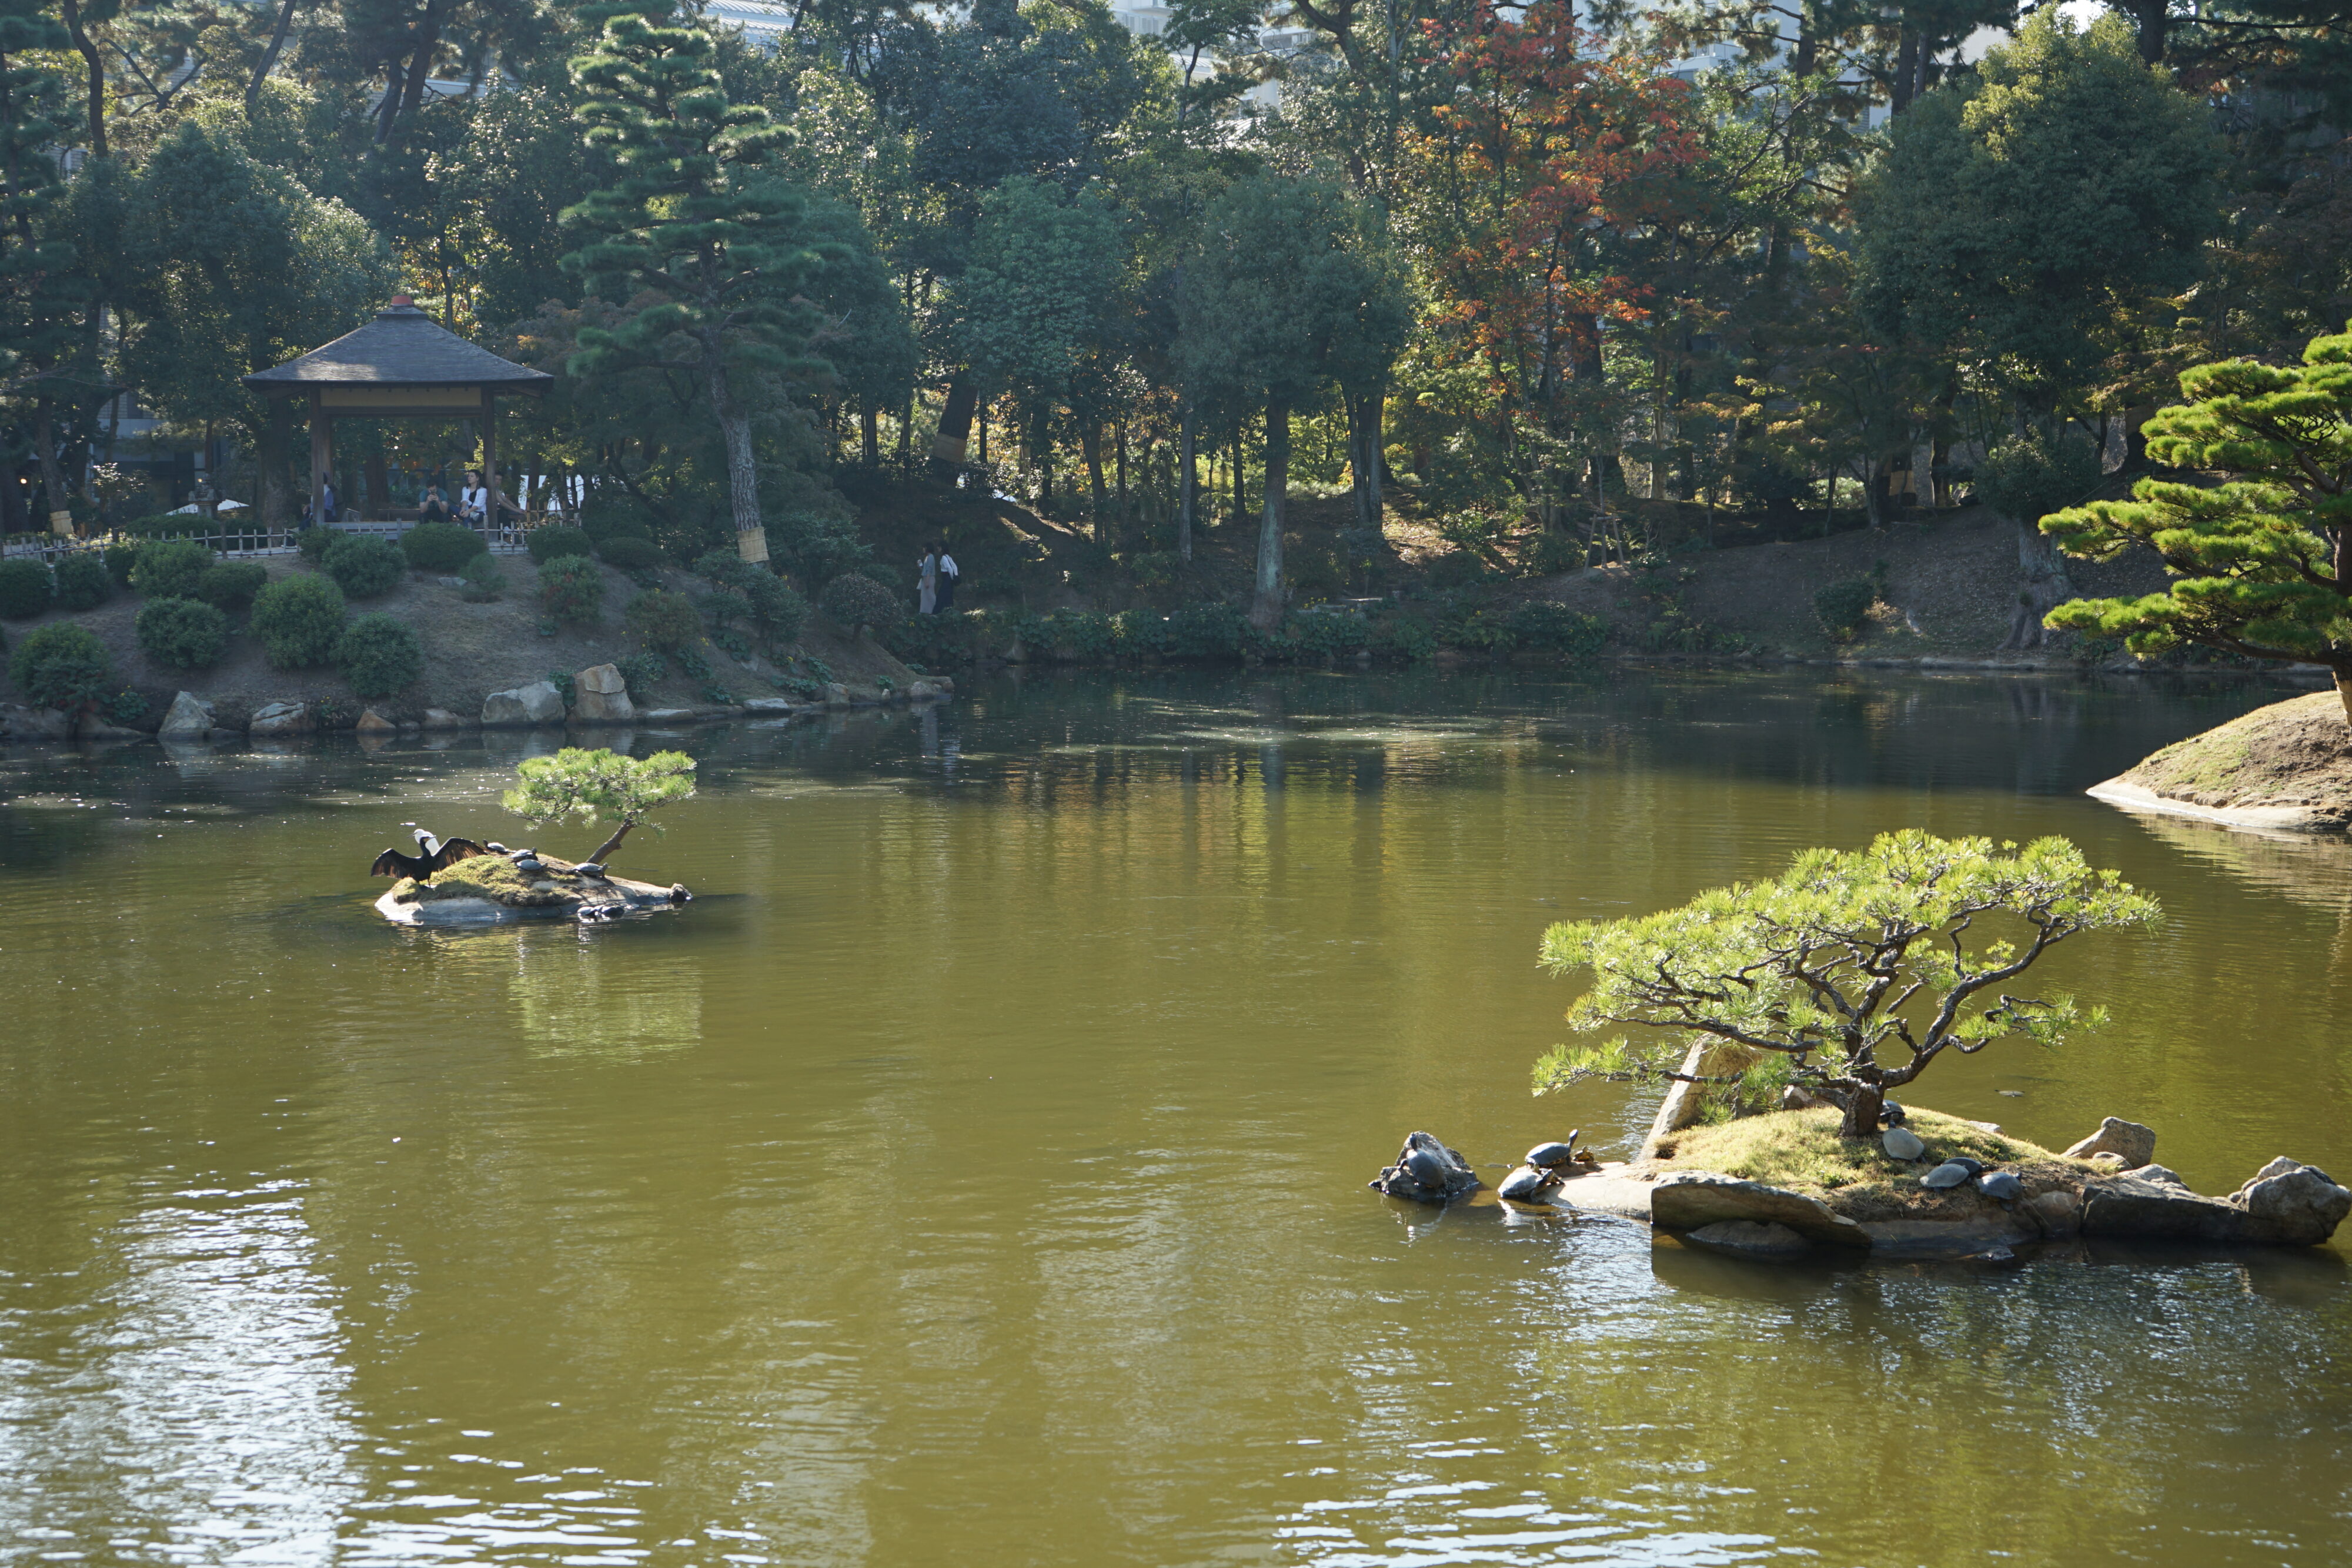 Blick auf einen Teich mit kleinen Inseln. Auf einer sitzen mehrere Schildkröten.